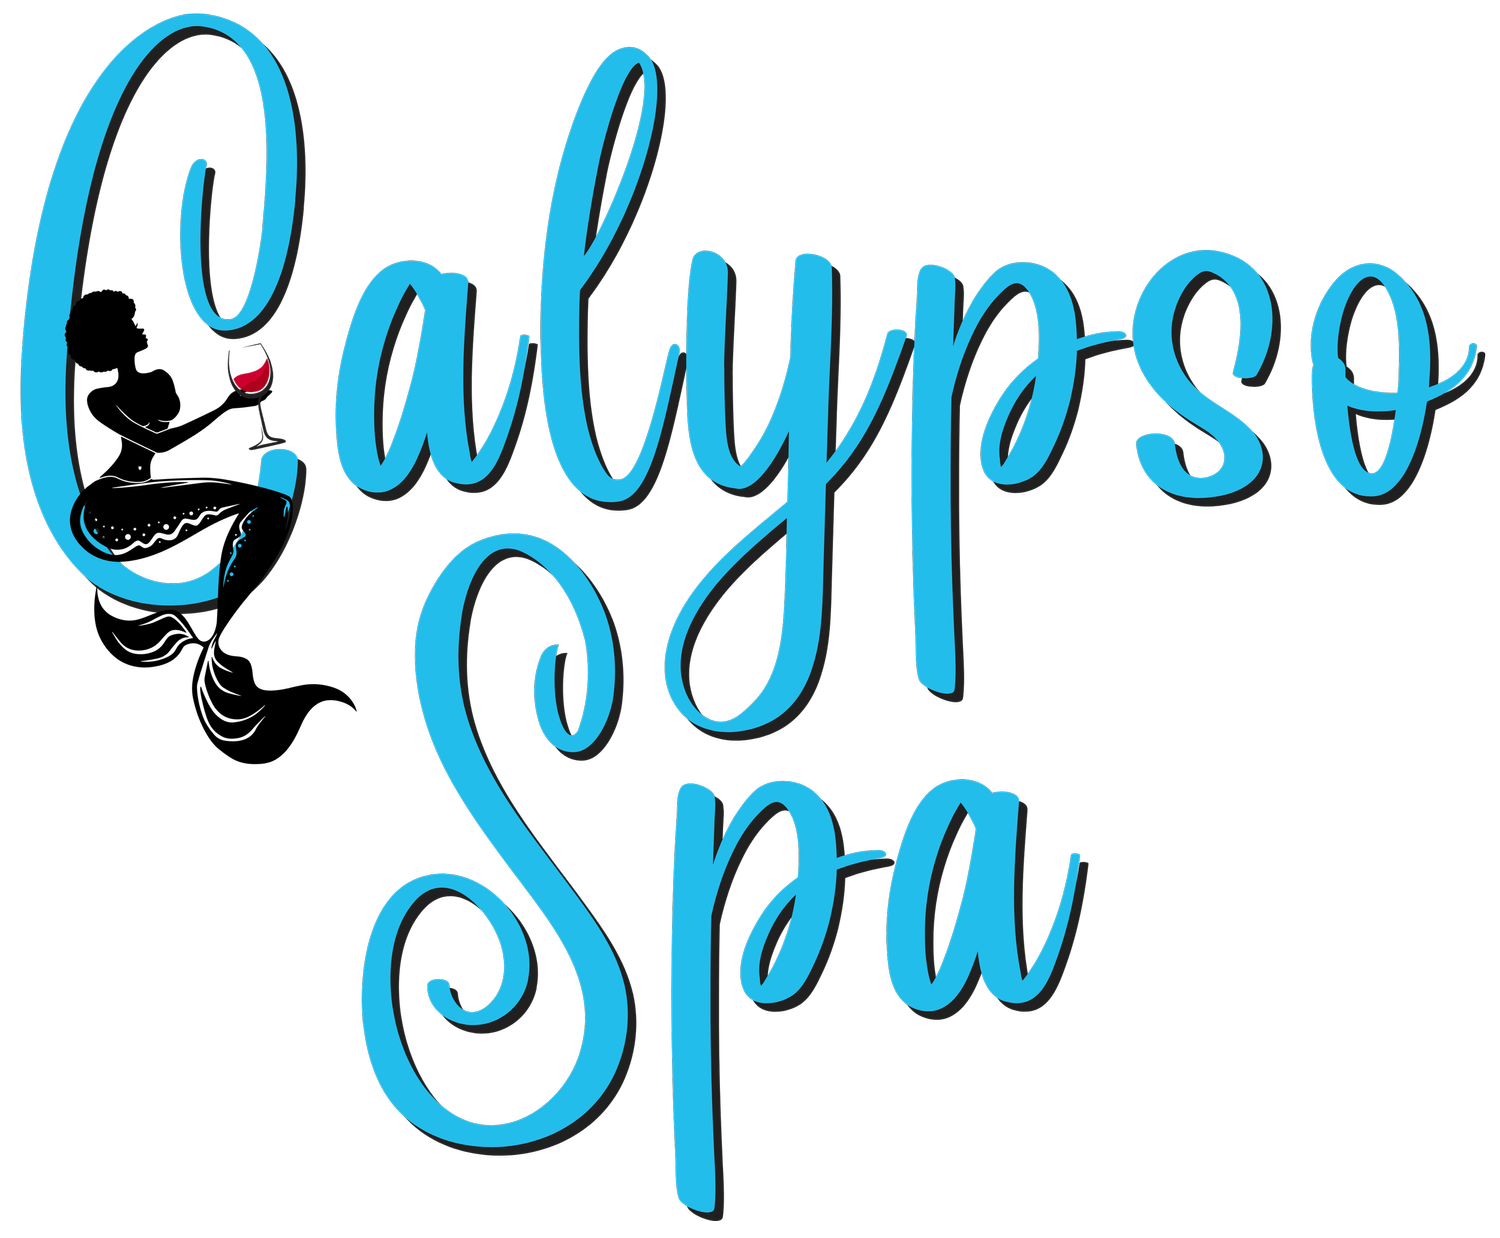 www.calypsospakw.com